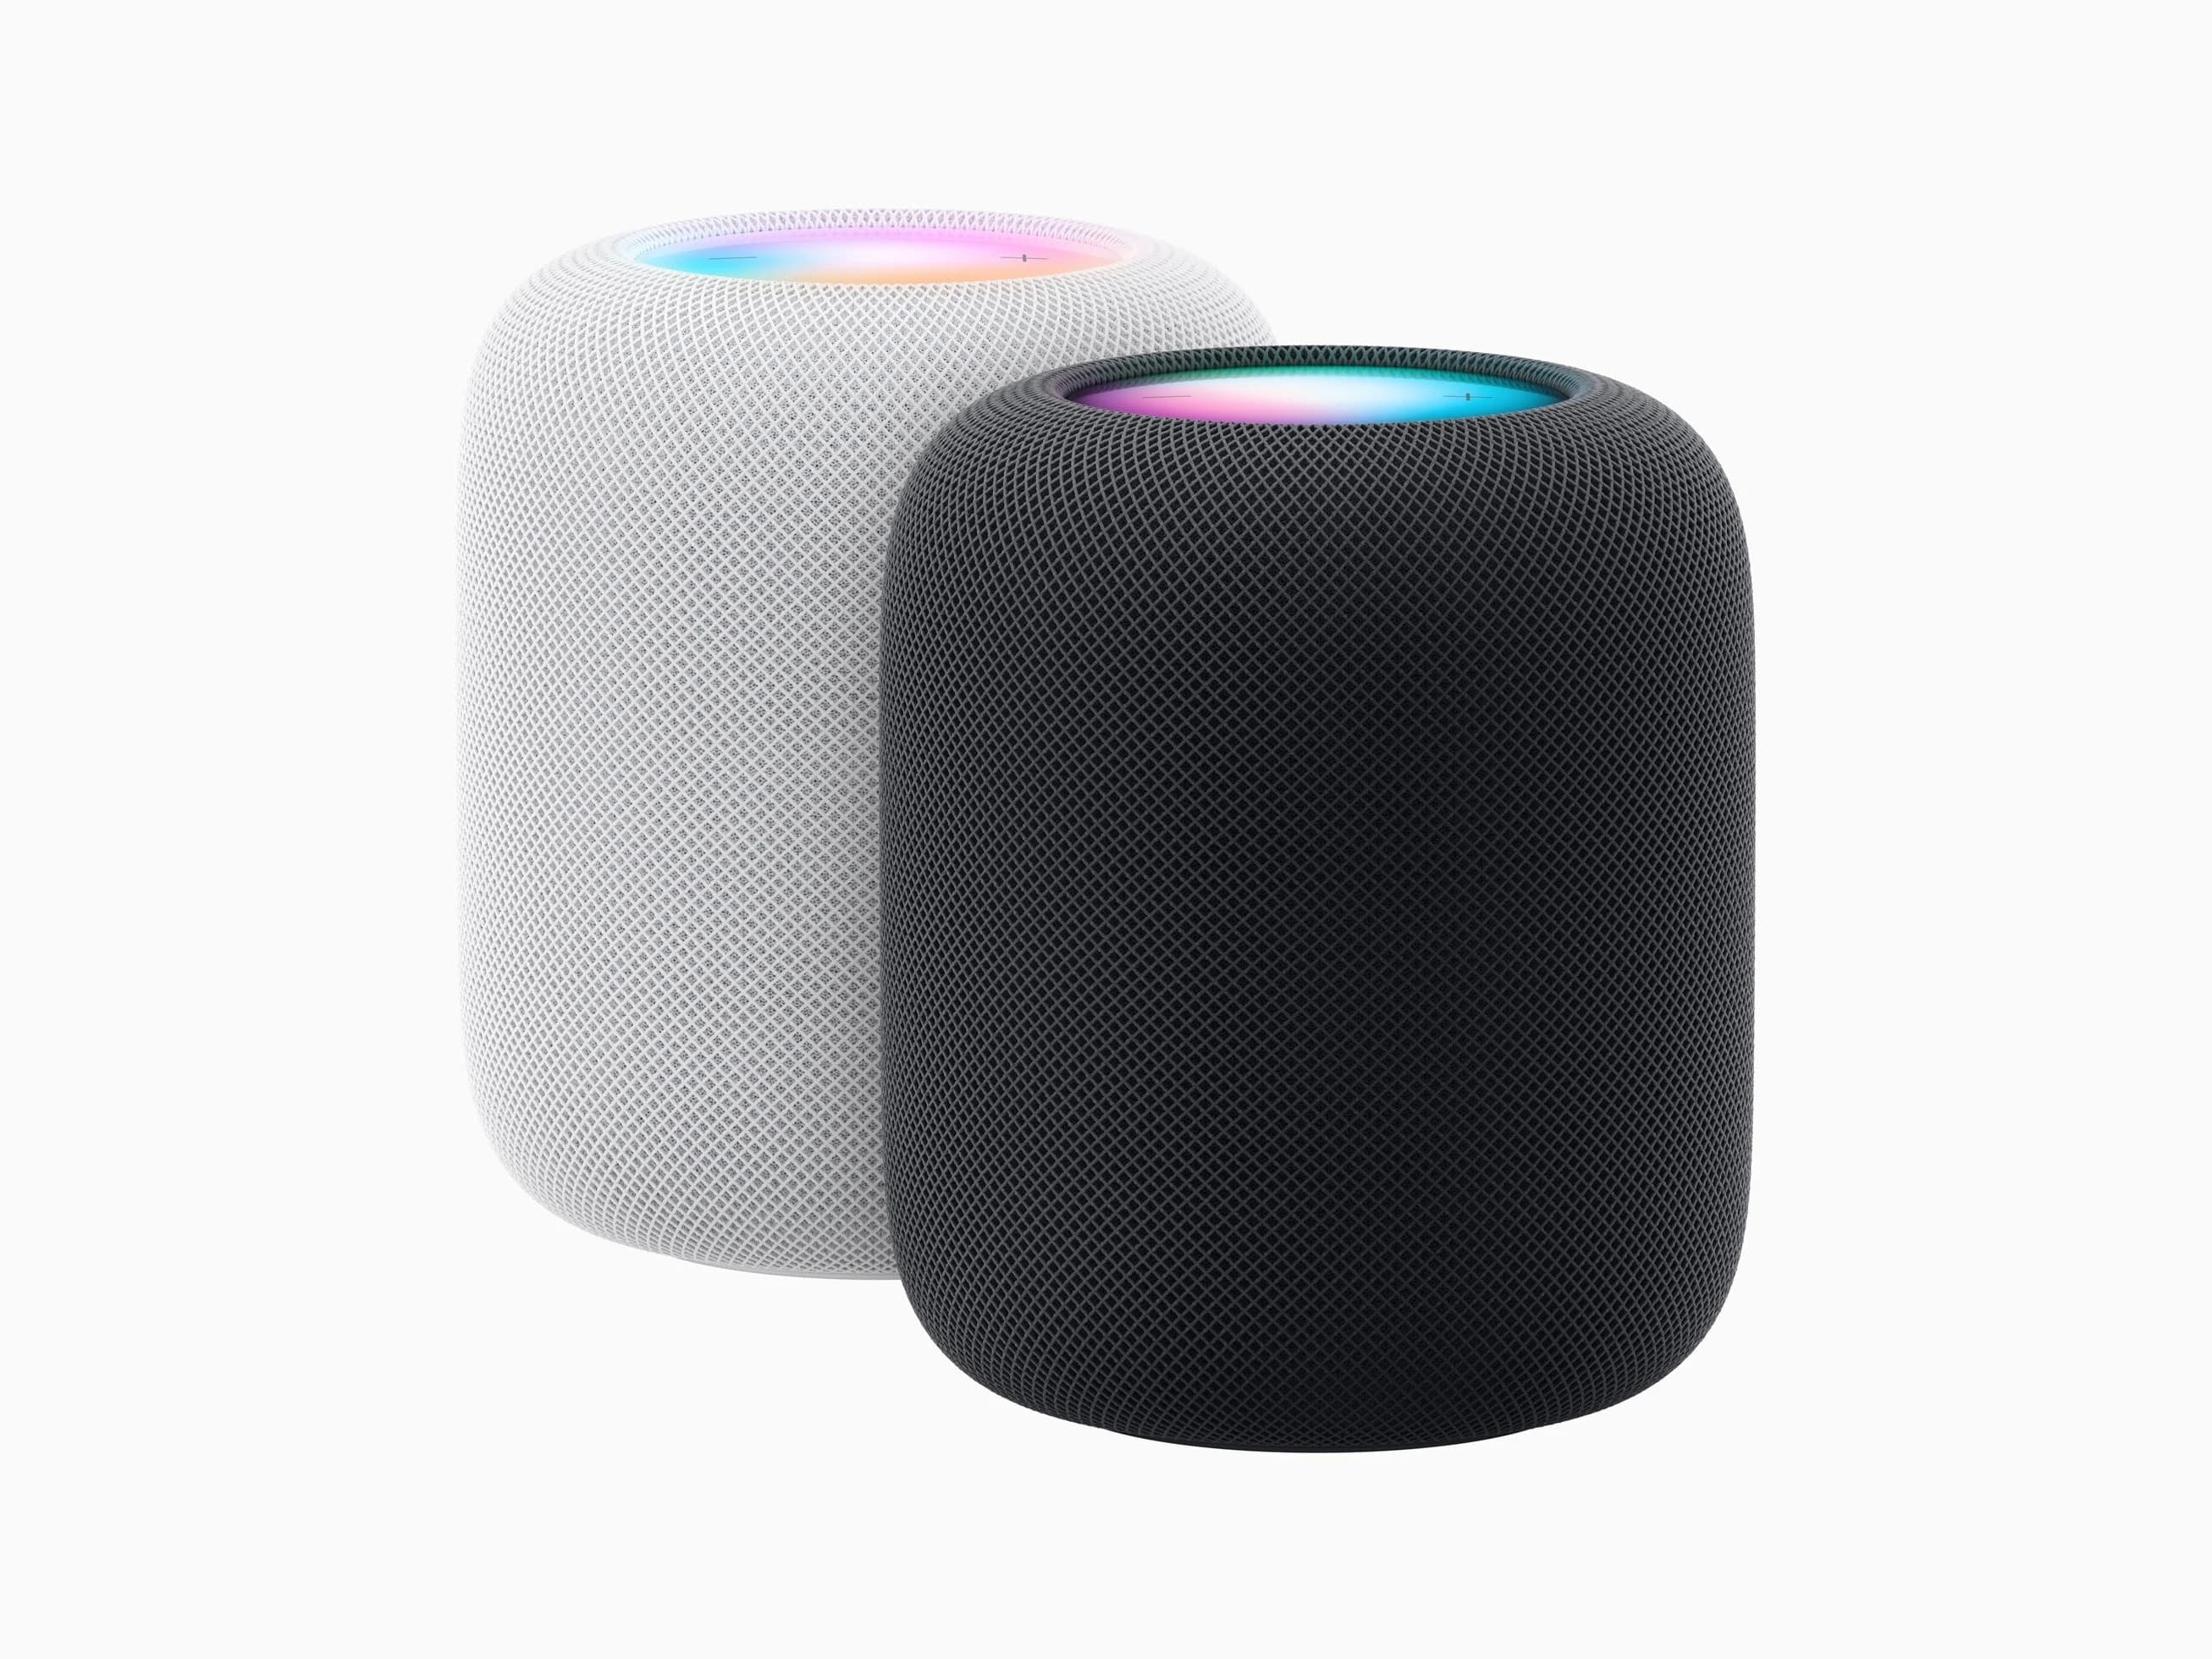 Az Apple legújabb HomePodja okosabb, hangosabb és jobb hangzású, mint valaha